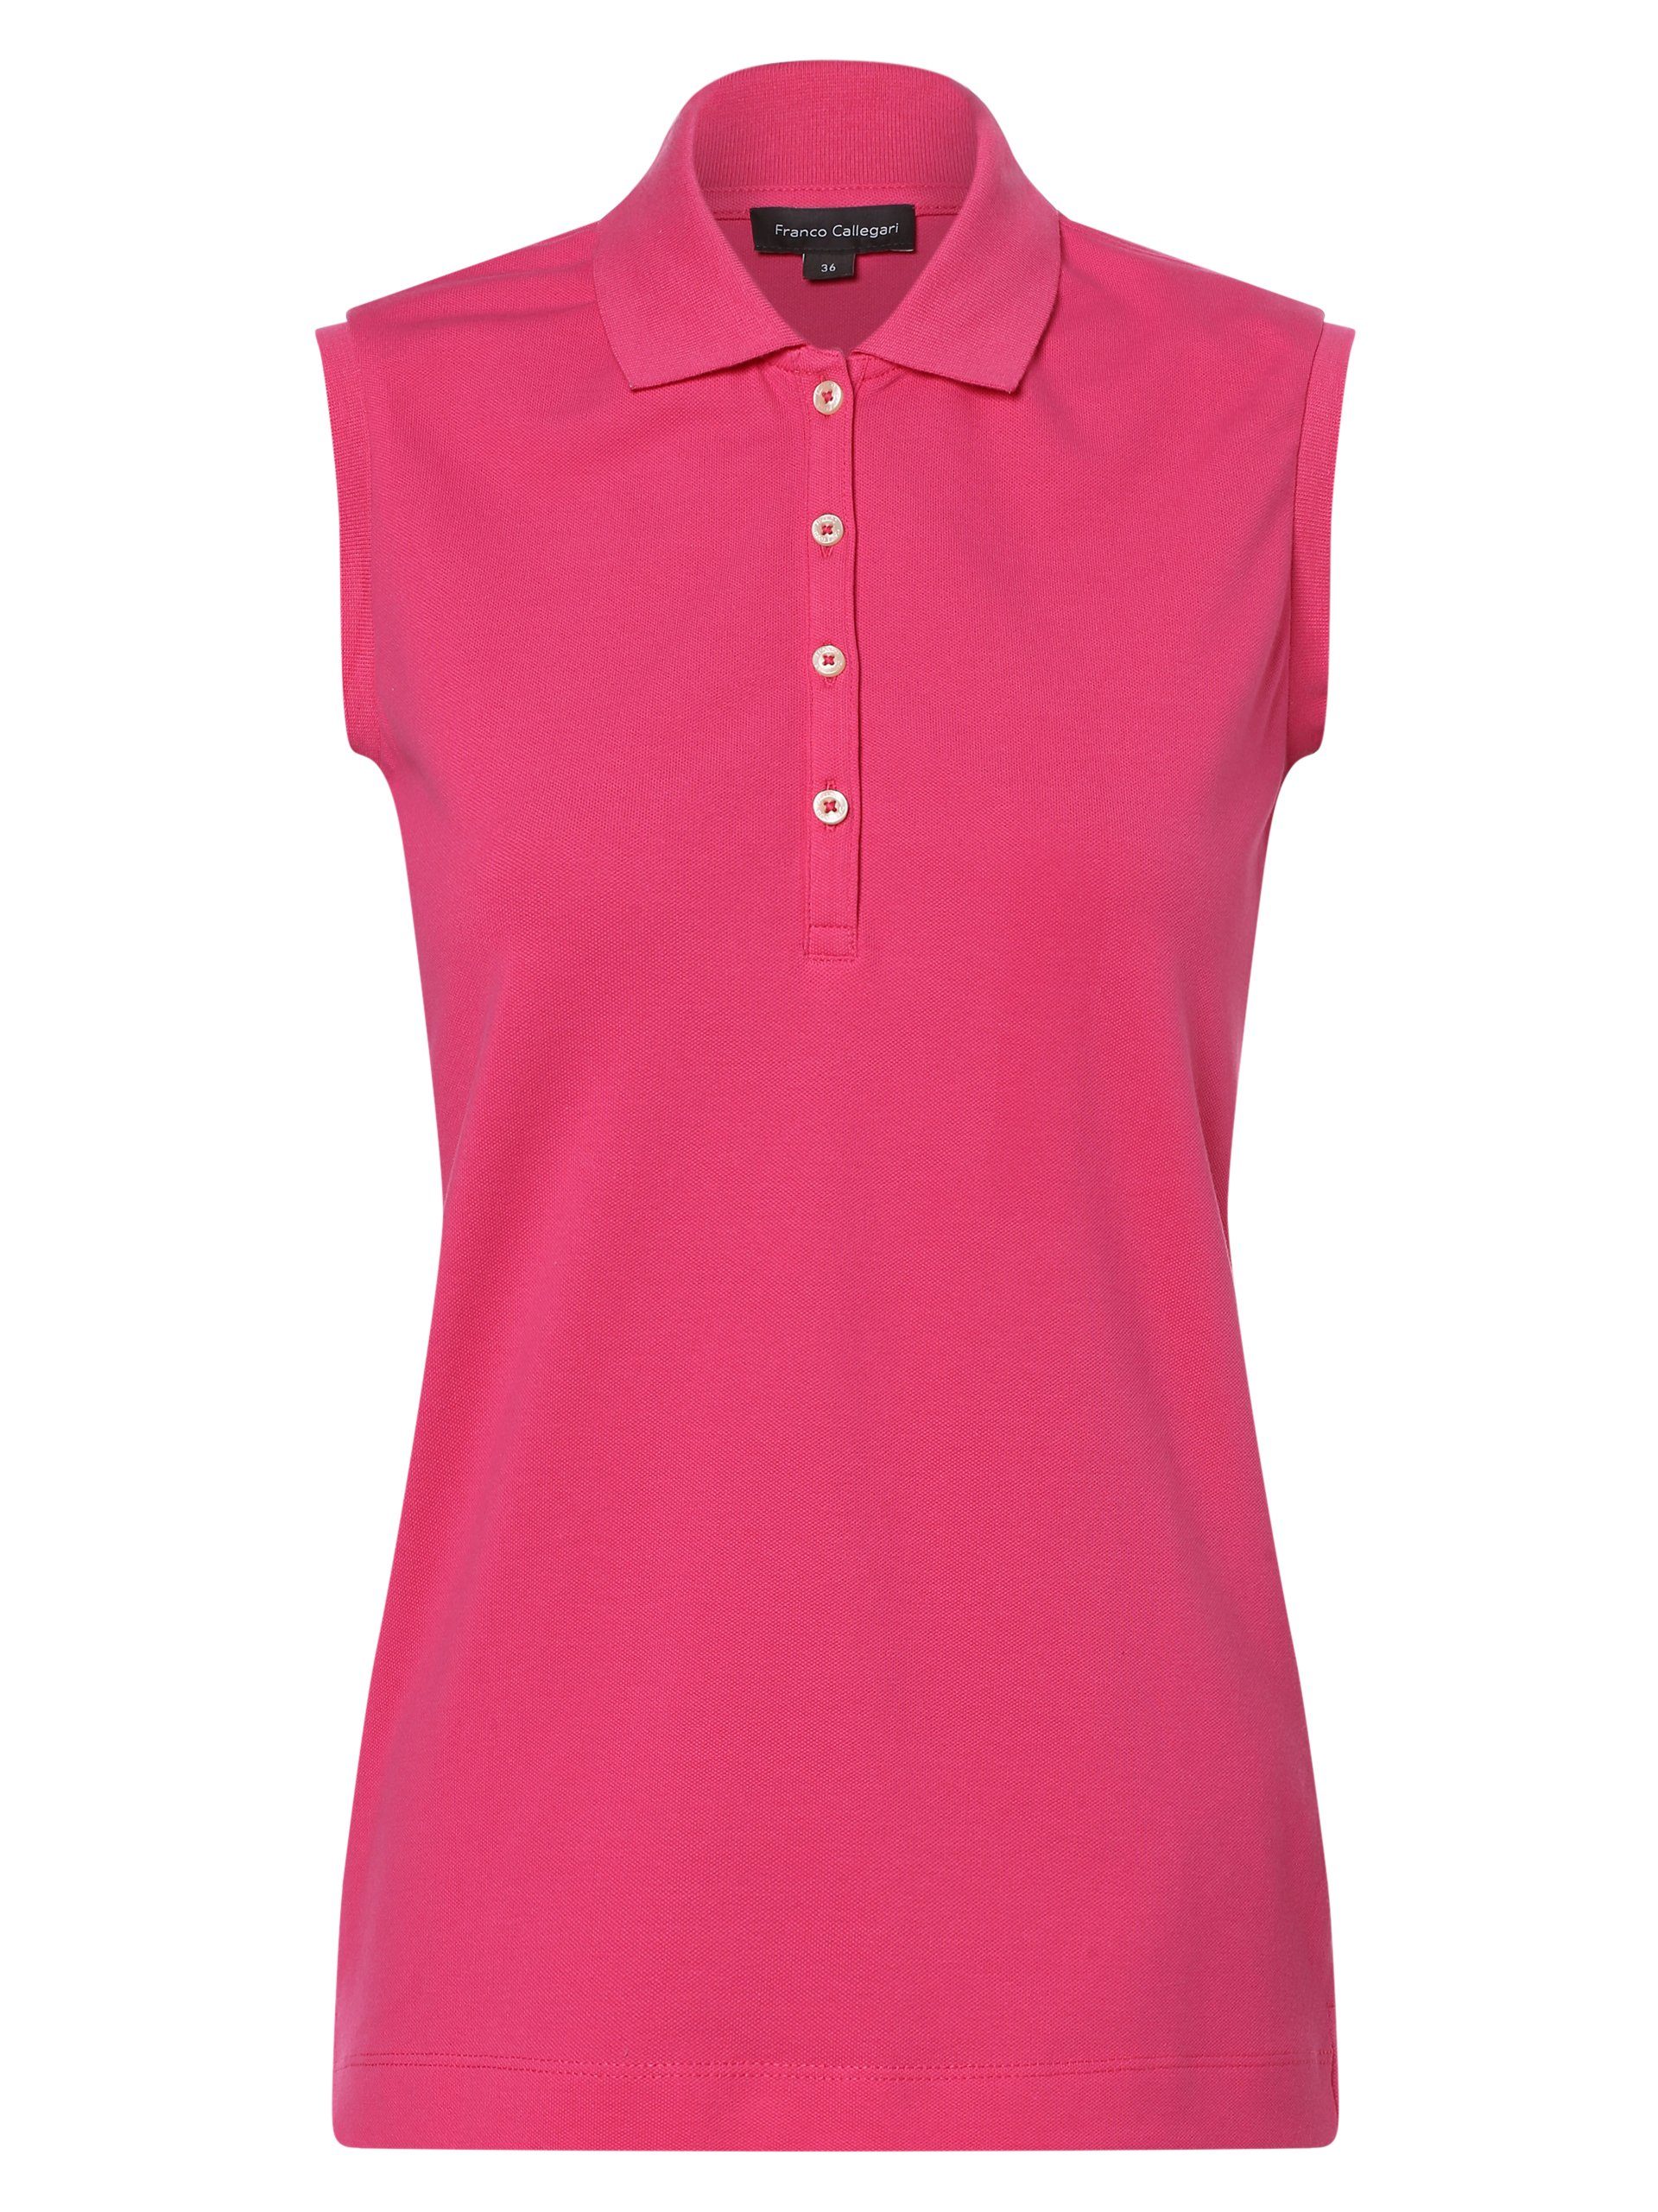 Franco Callegari Poloshirt pink | Poloshirts